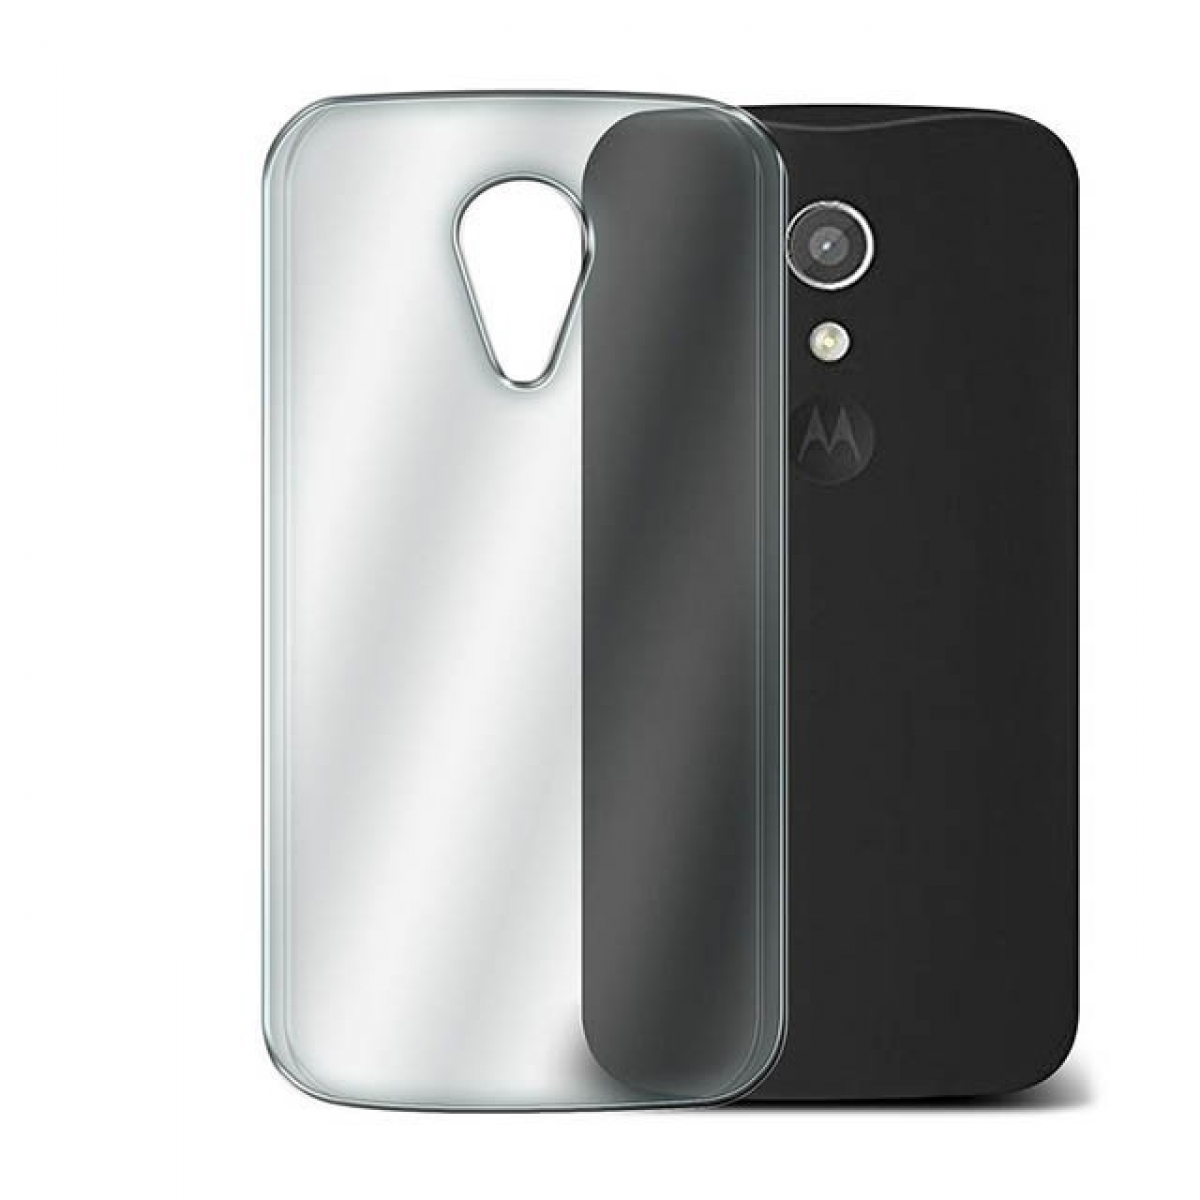 Backcover, Transparent Motorola, G2, CASEONLINE CA4, Moto